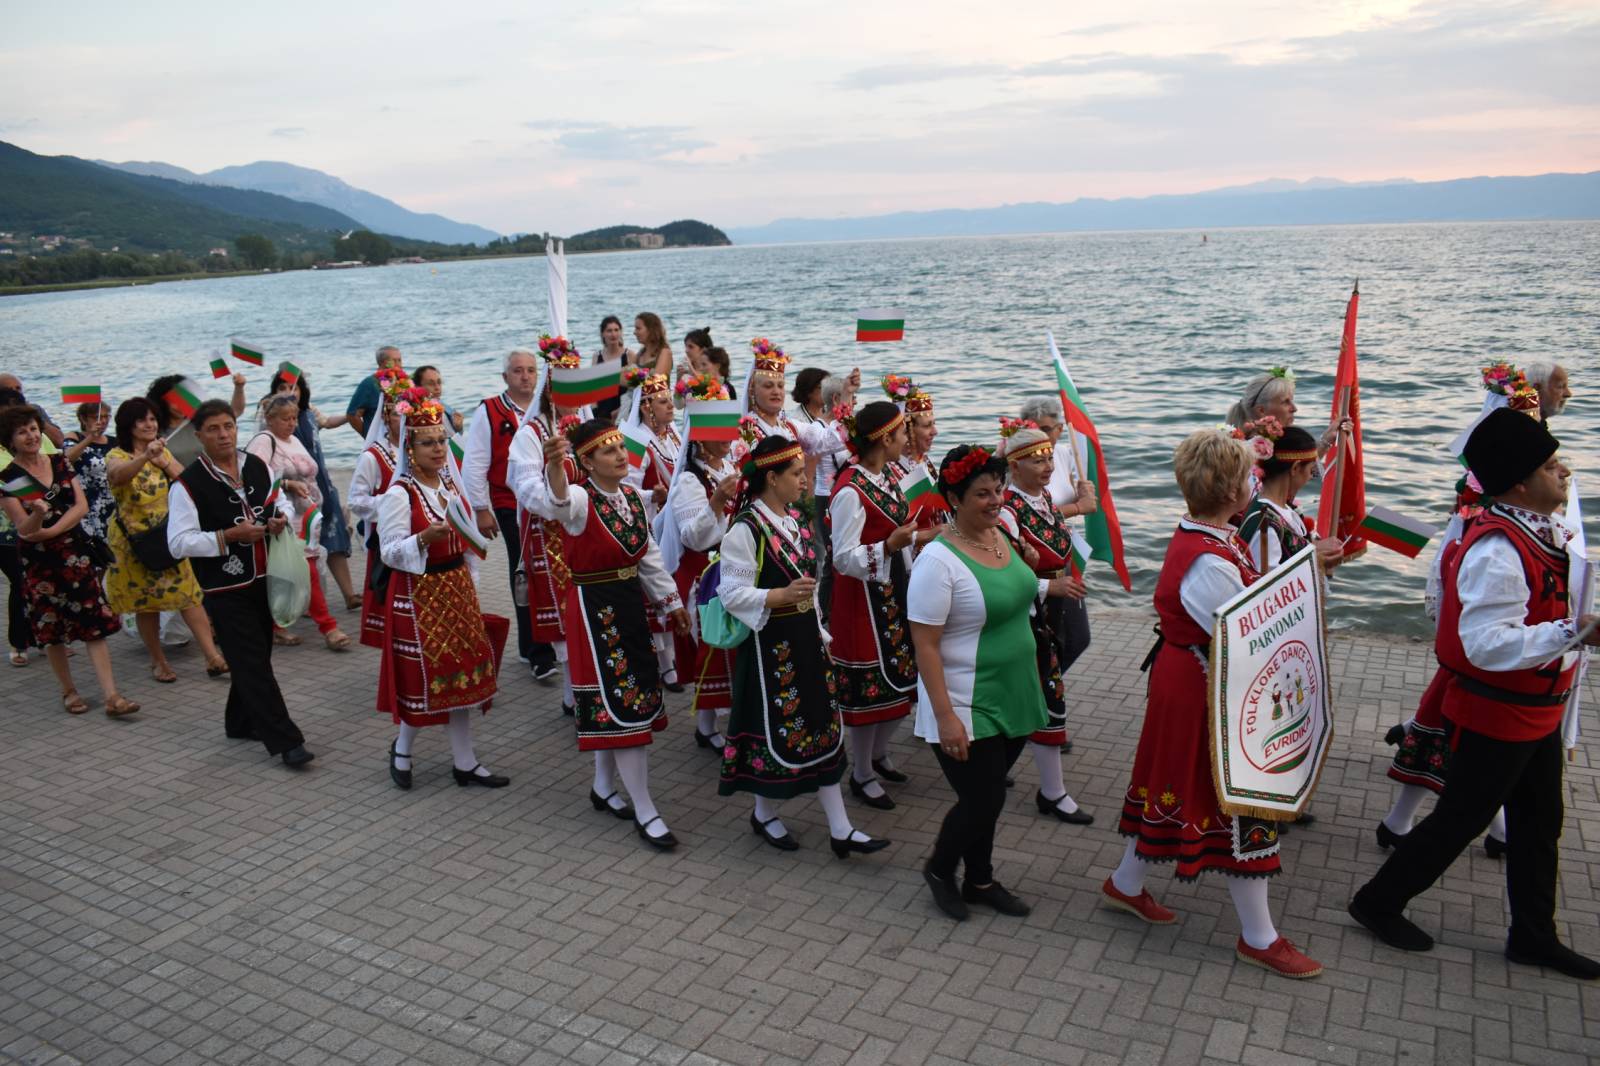 Festivals Euro Balkan Folk Fest